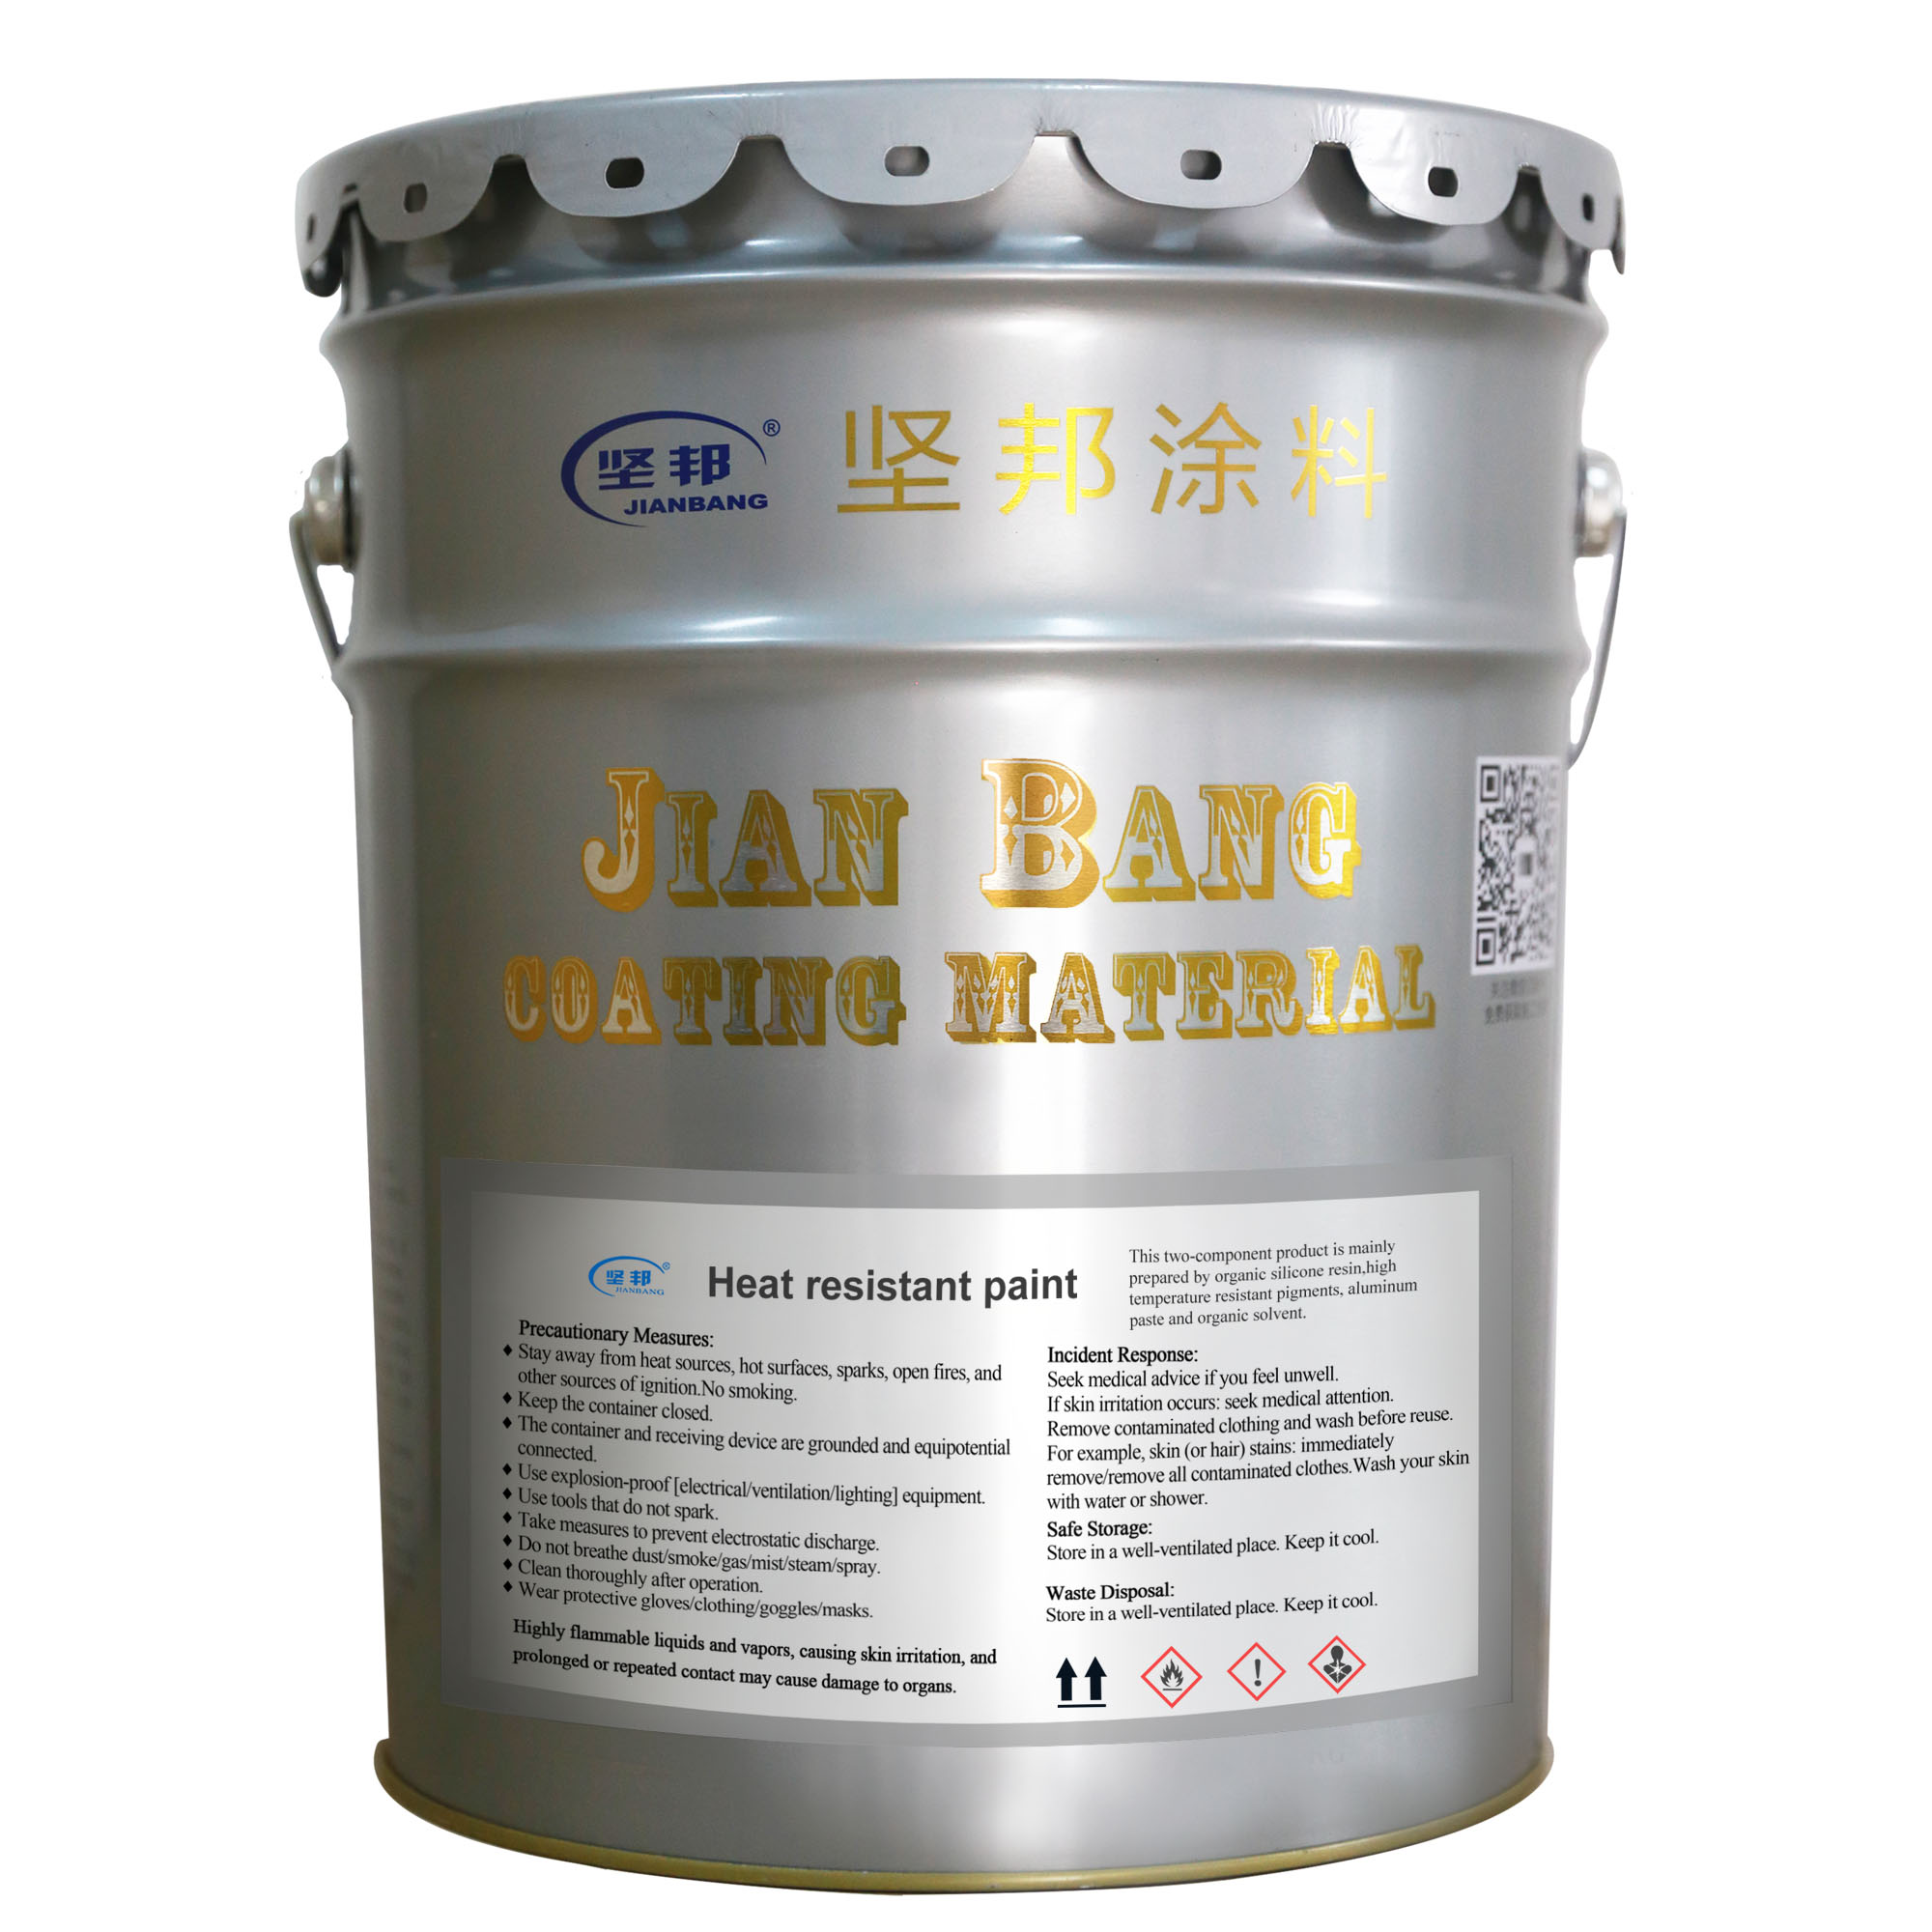 JIANBANG Top marine paint products Supply ship-1